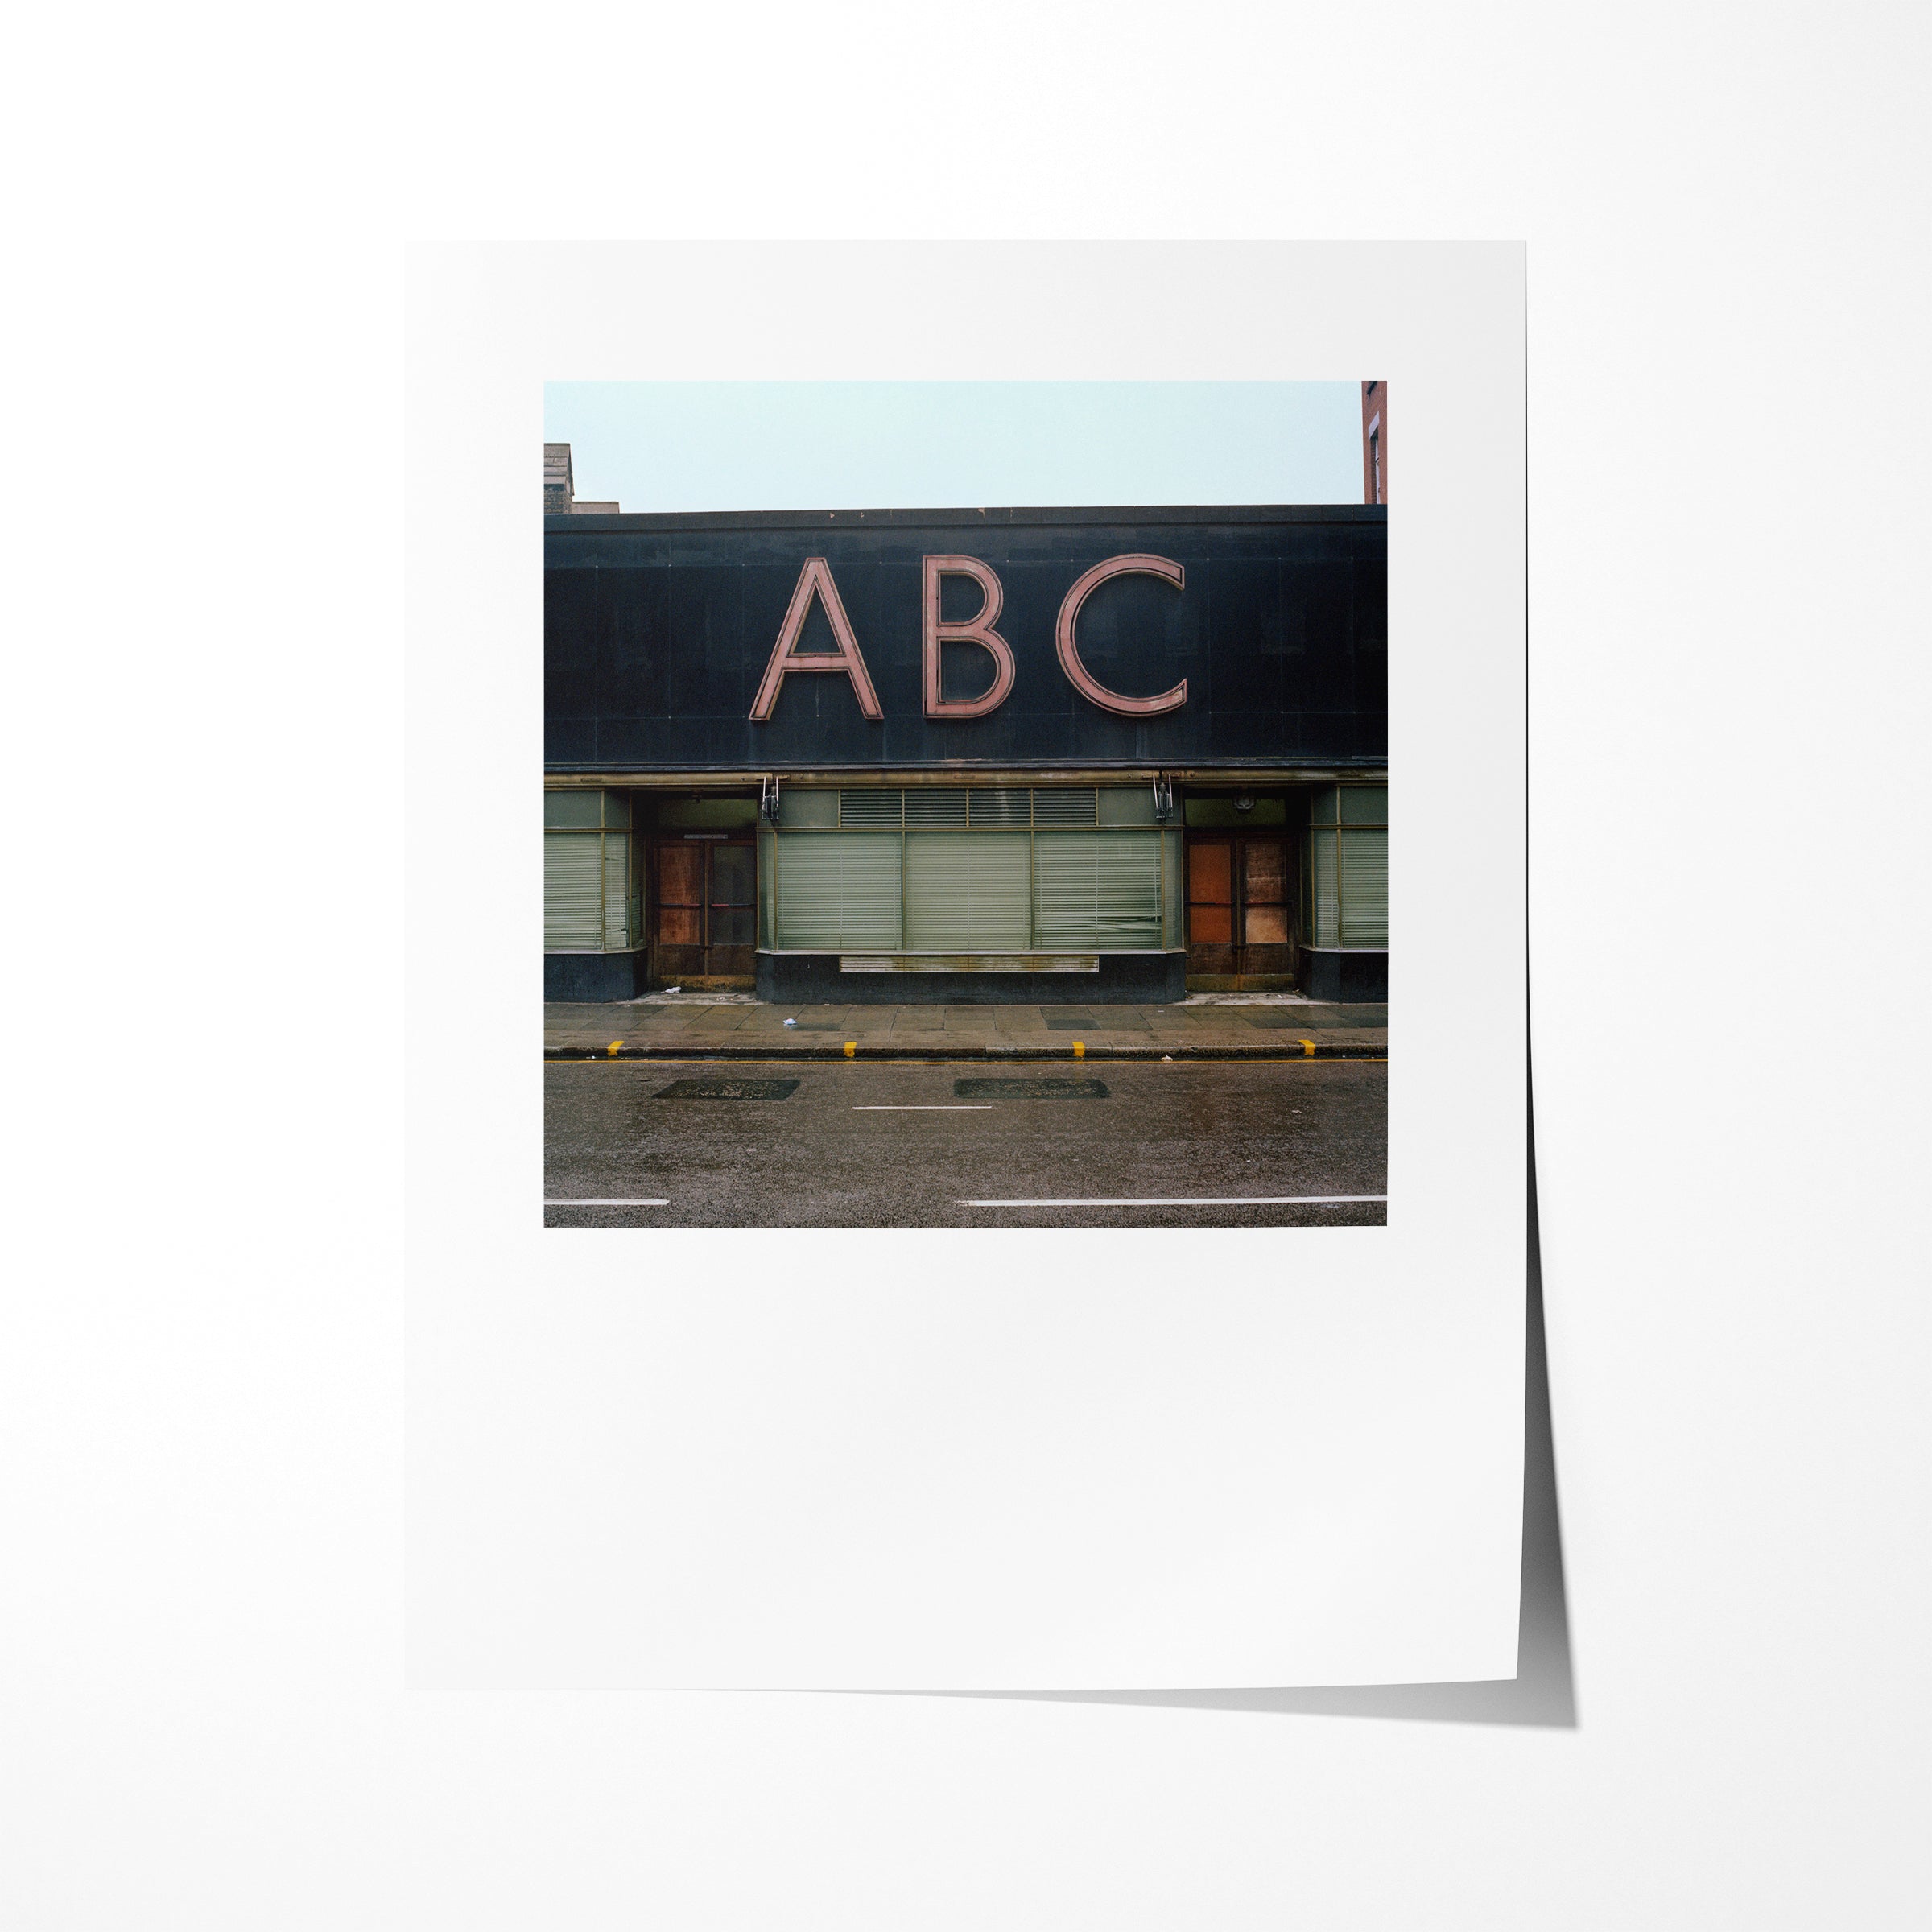 ABC (Aerated Bread Company), Camden Road, London, 1979 - 7x9" Print